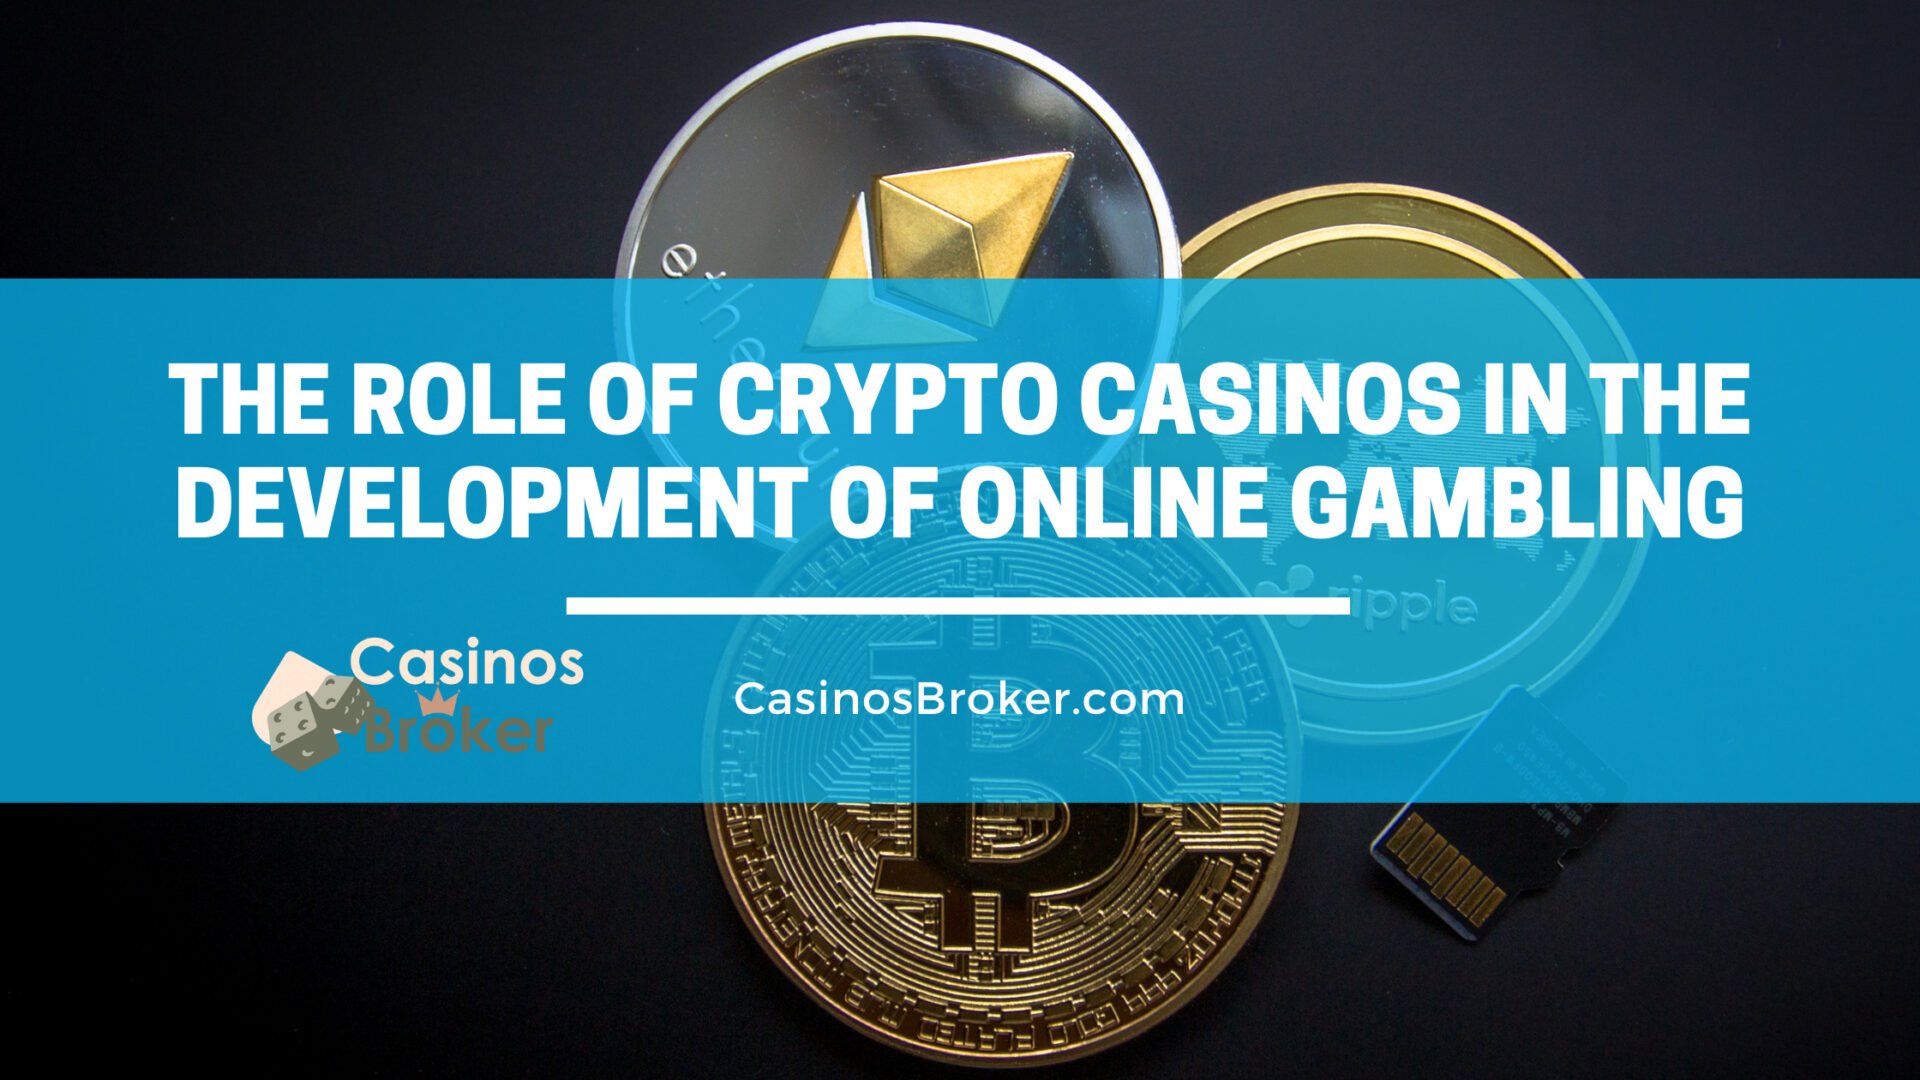 Kryptokasinoer spiller en rolle i udviklingen af online gambling